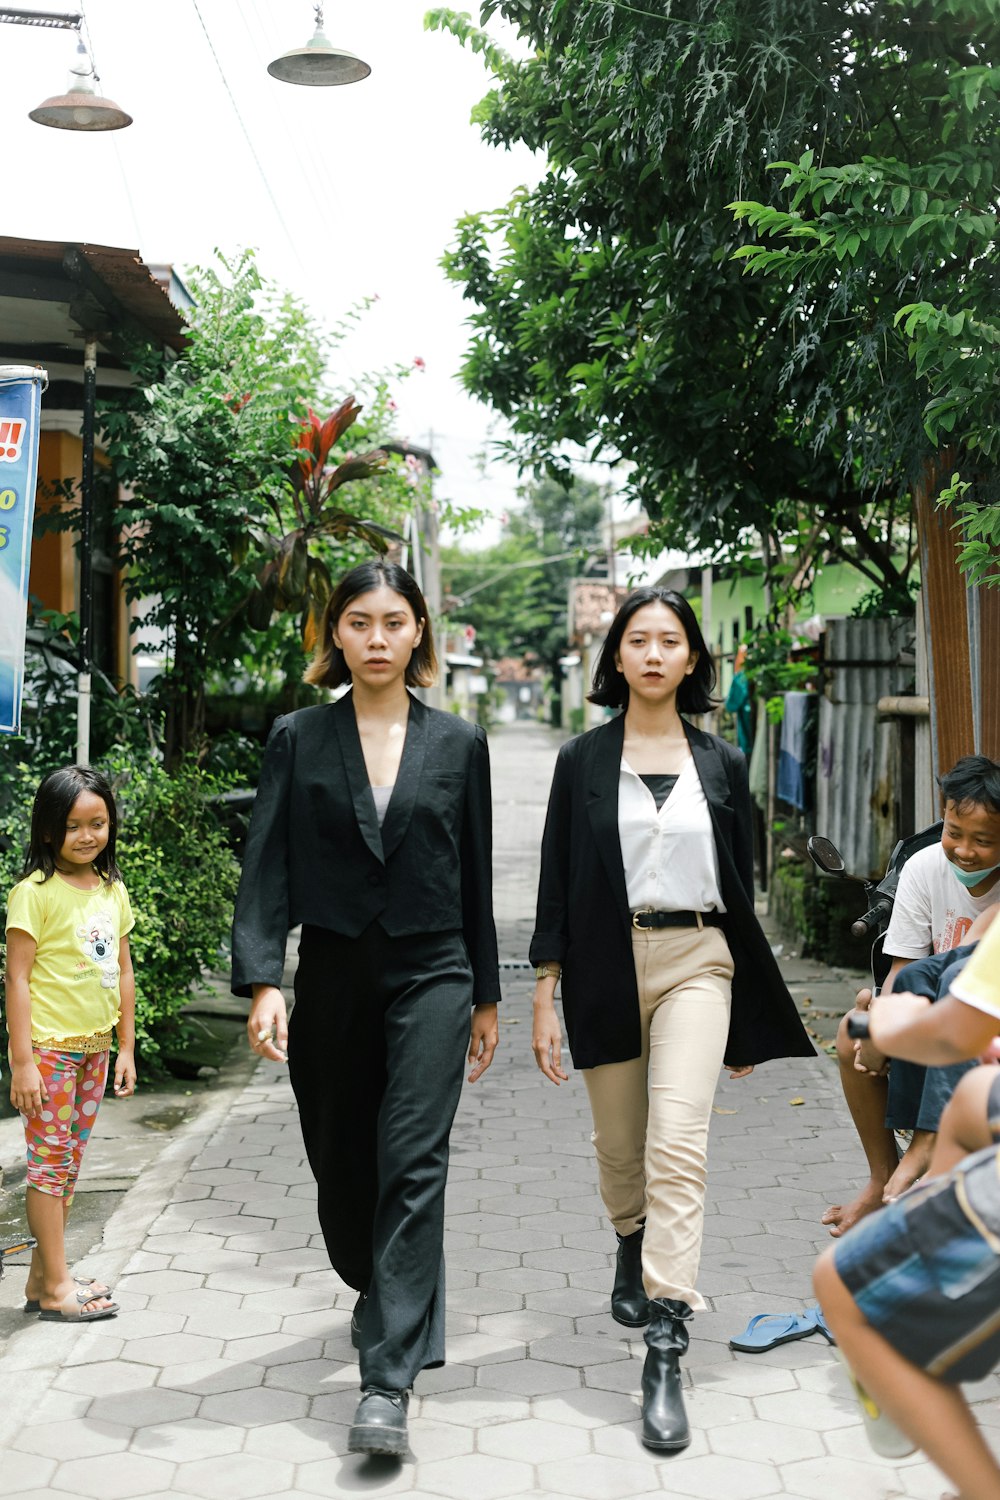 흰색 블레이저를 입은 여자 옆에 서 있는 검은 블레이저를 입은 여자